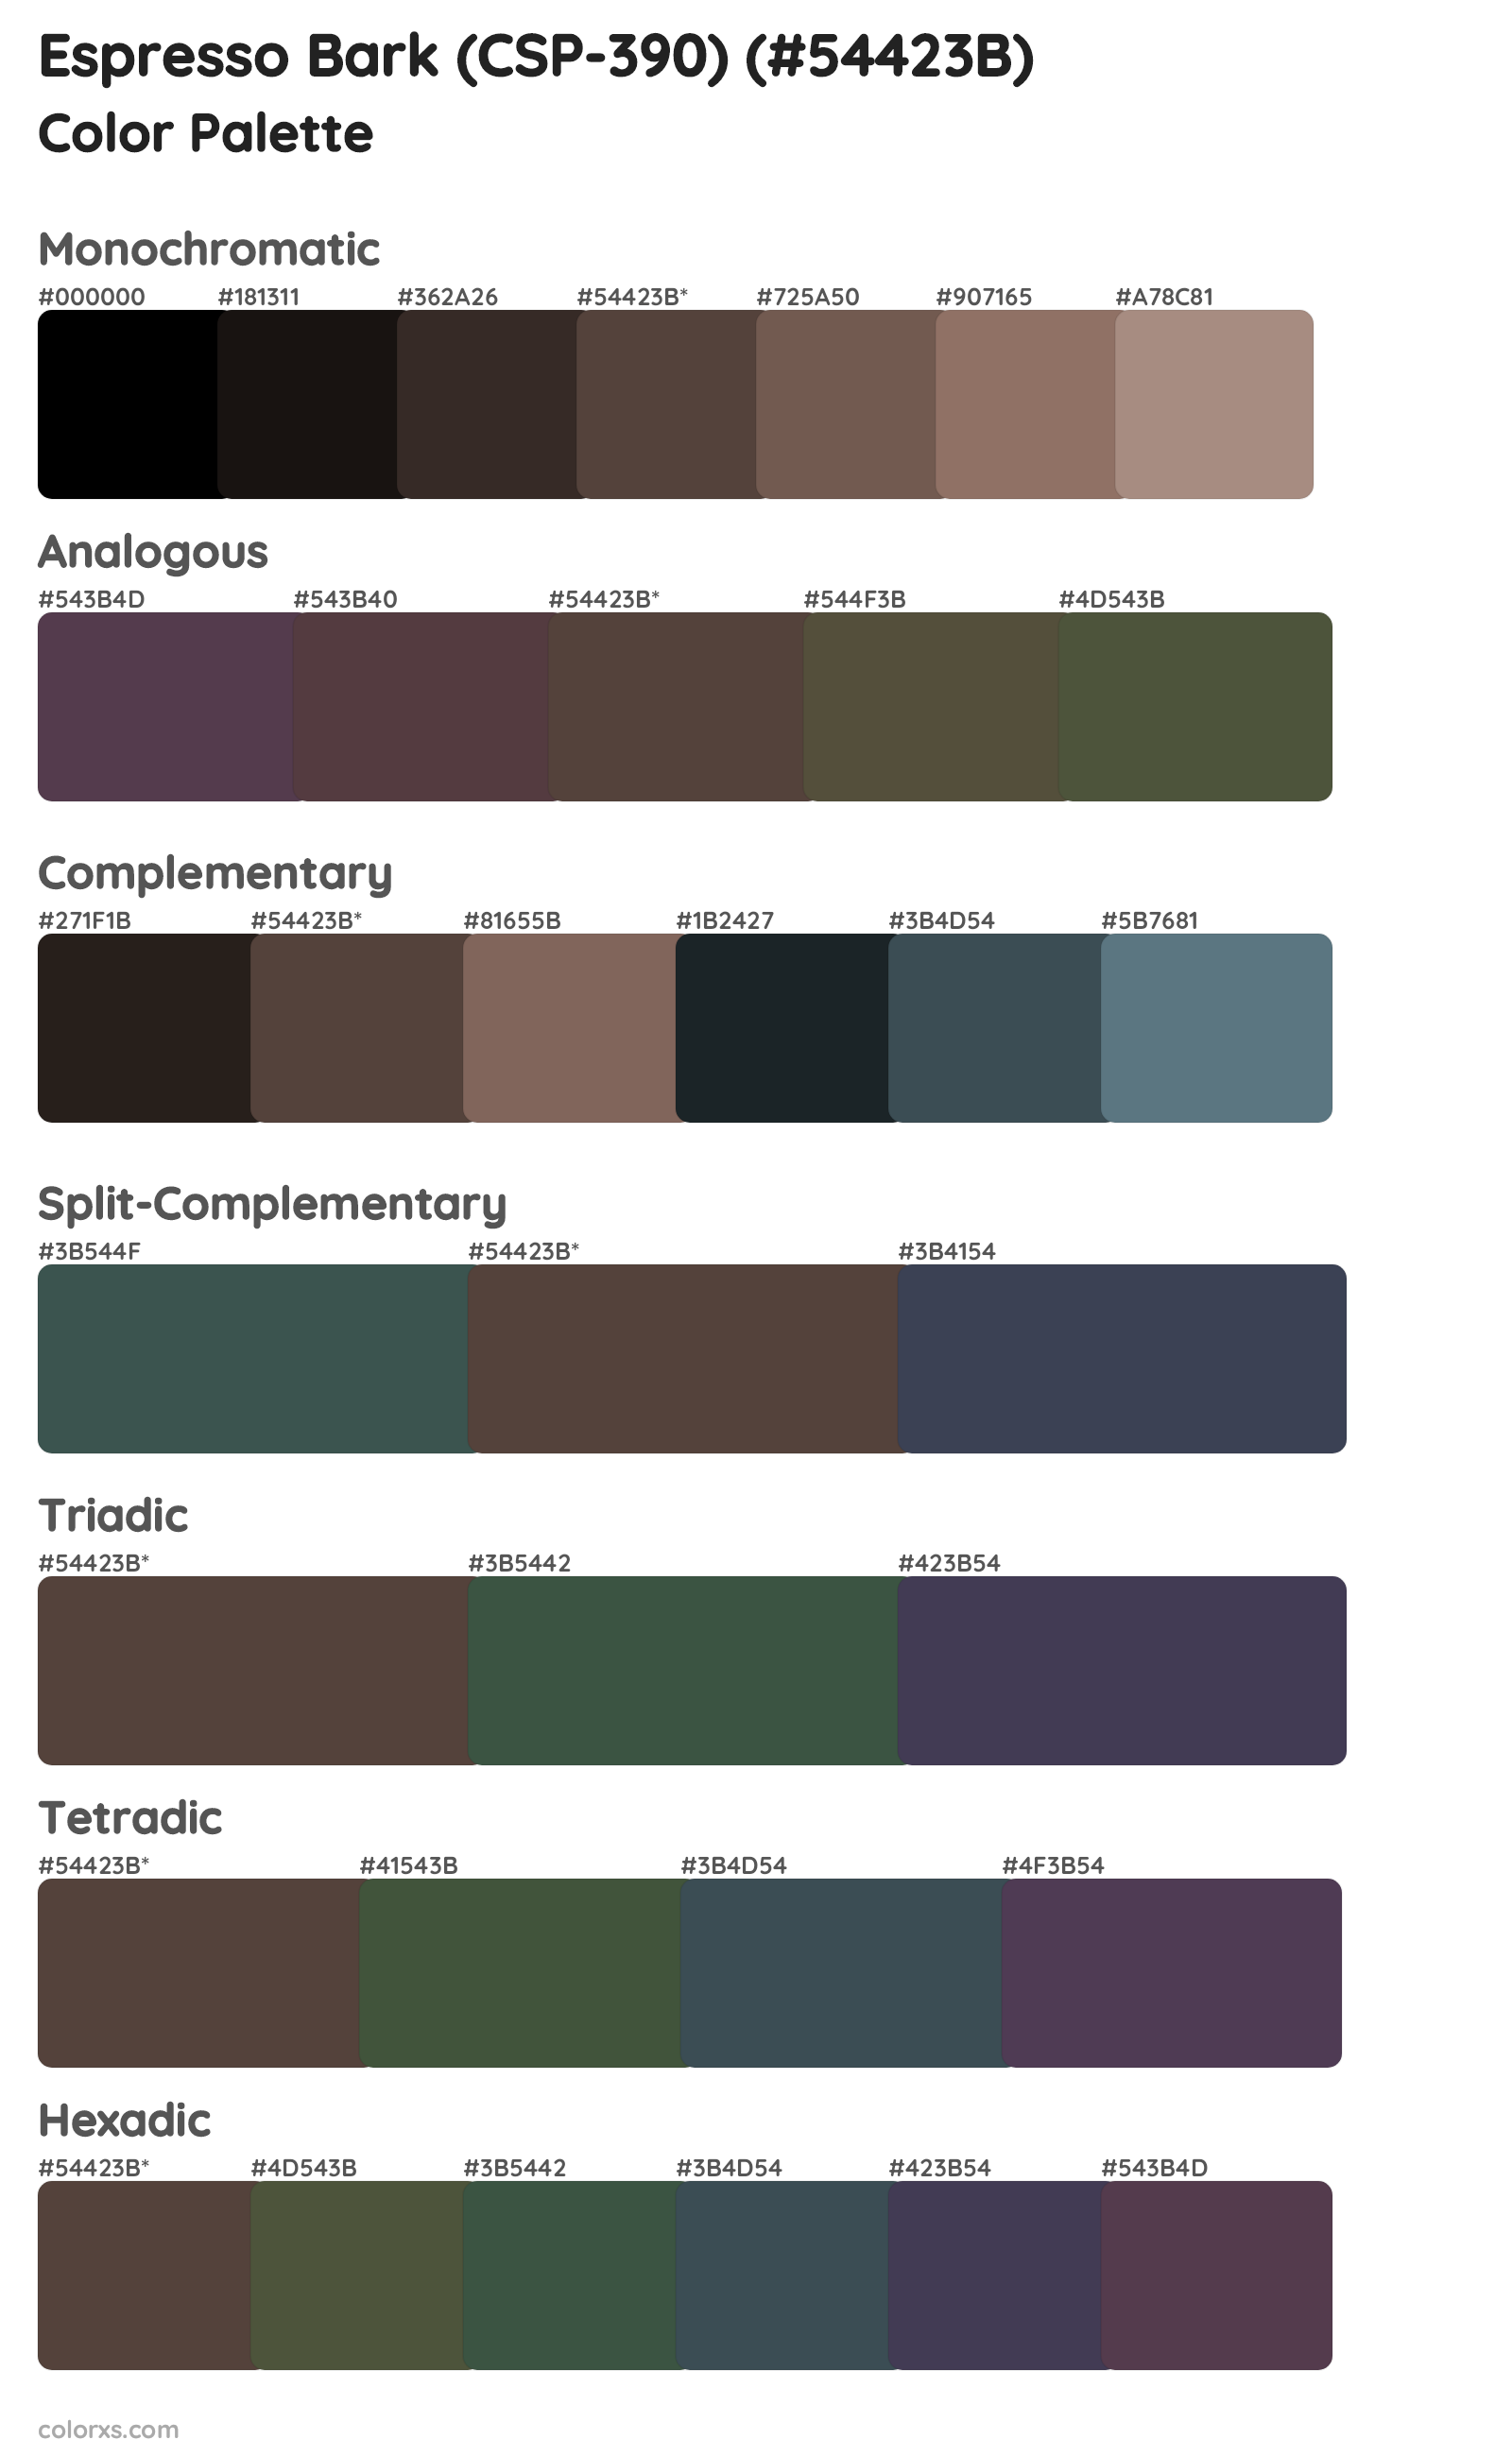 Espresso Bark (CSP-390) Color Scheme Palettes